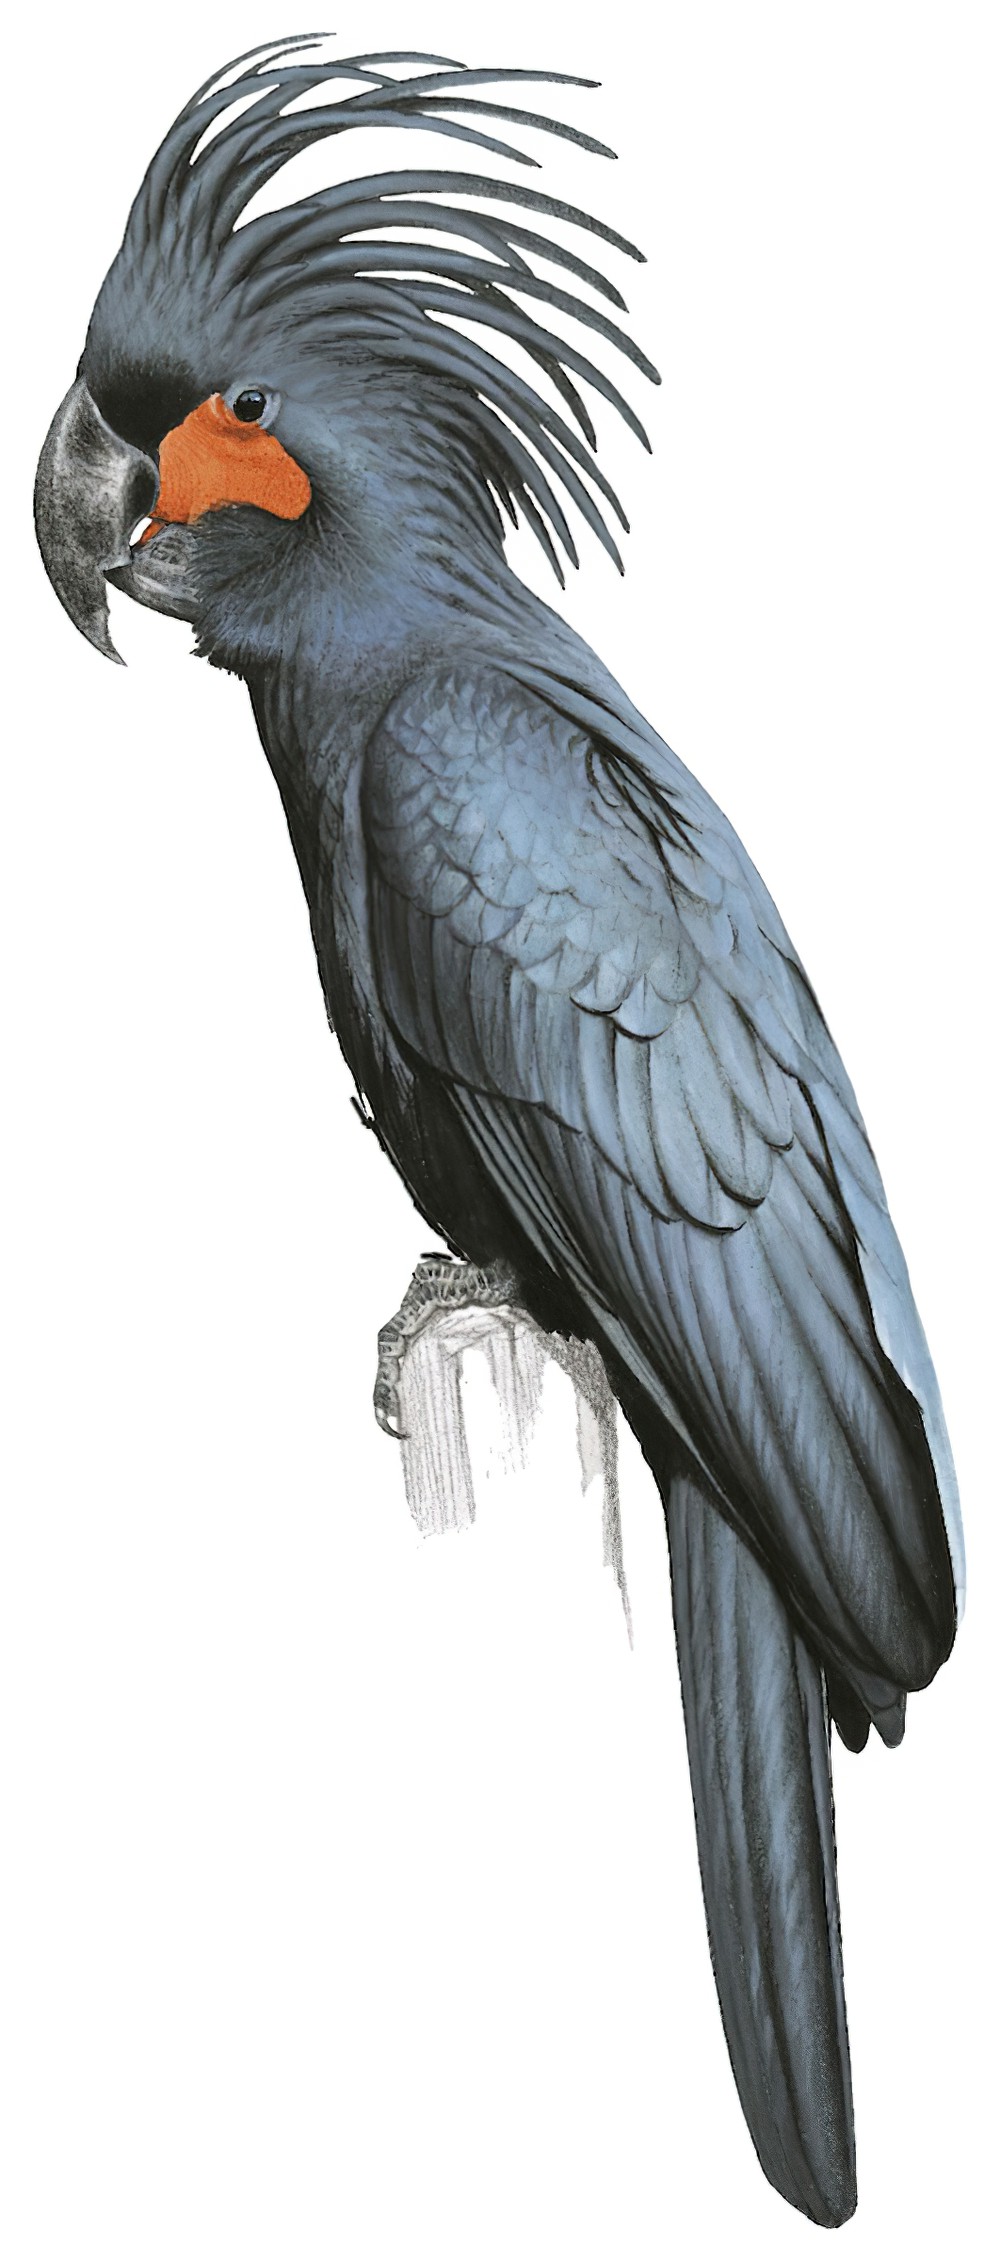 Palm Cockatoo / Probosciger aterrimus